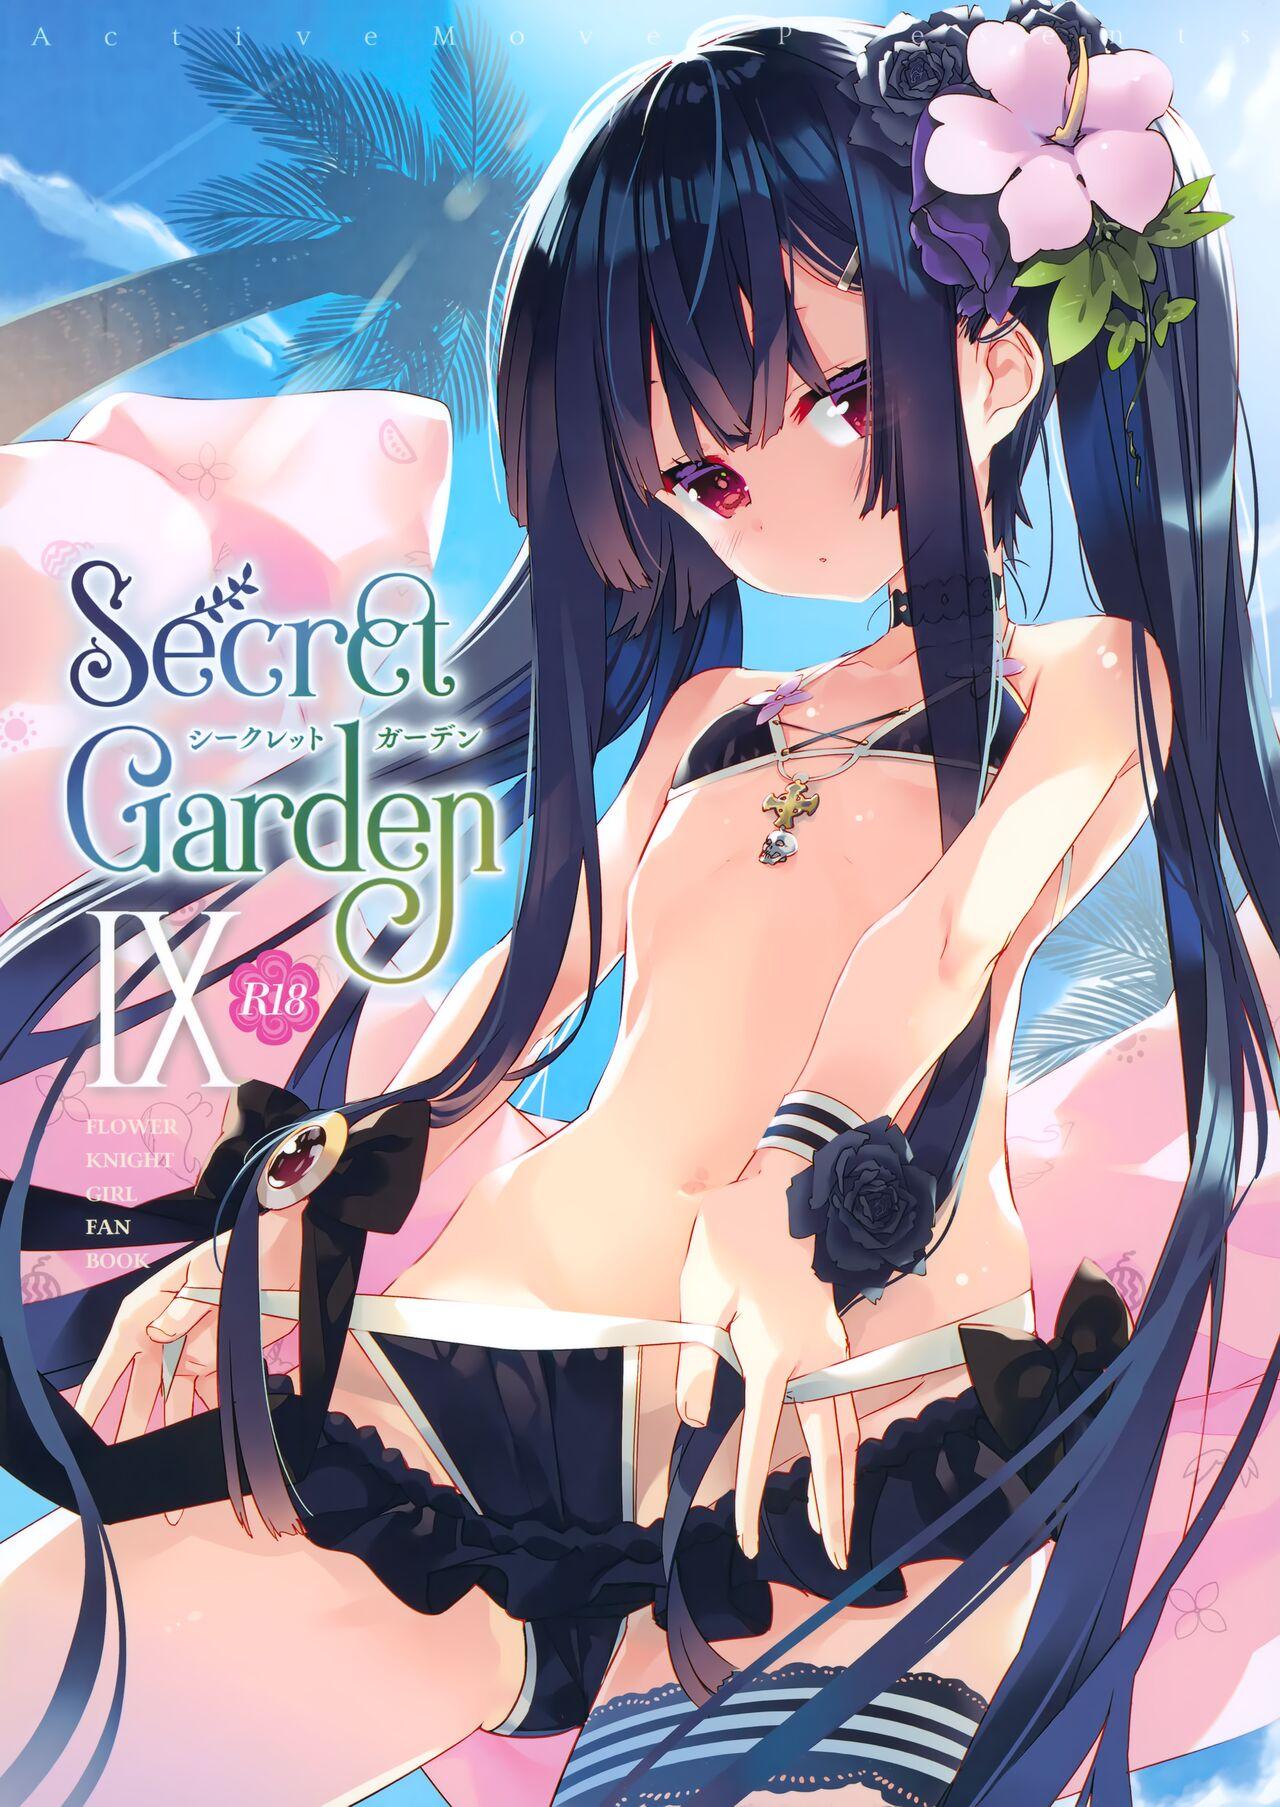 Indo Secret Garden Ⅸ - Flower knight girl Putaria - Picture 1